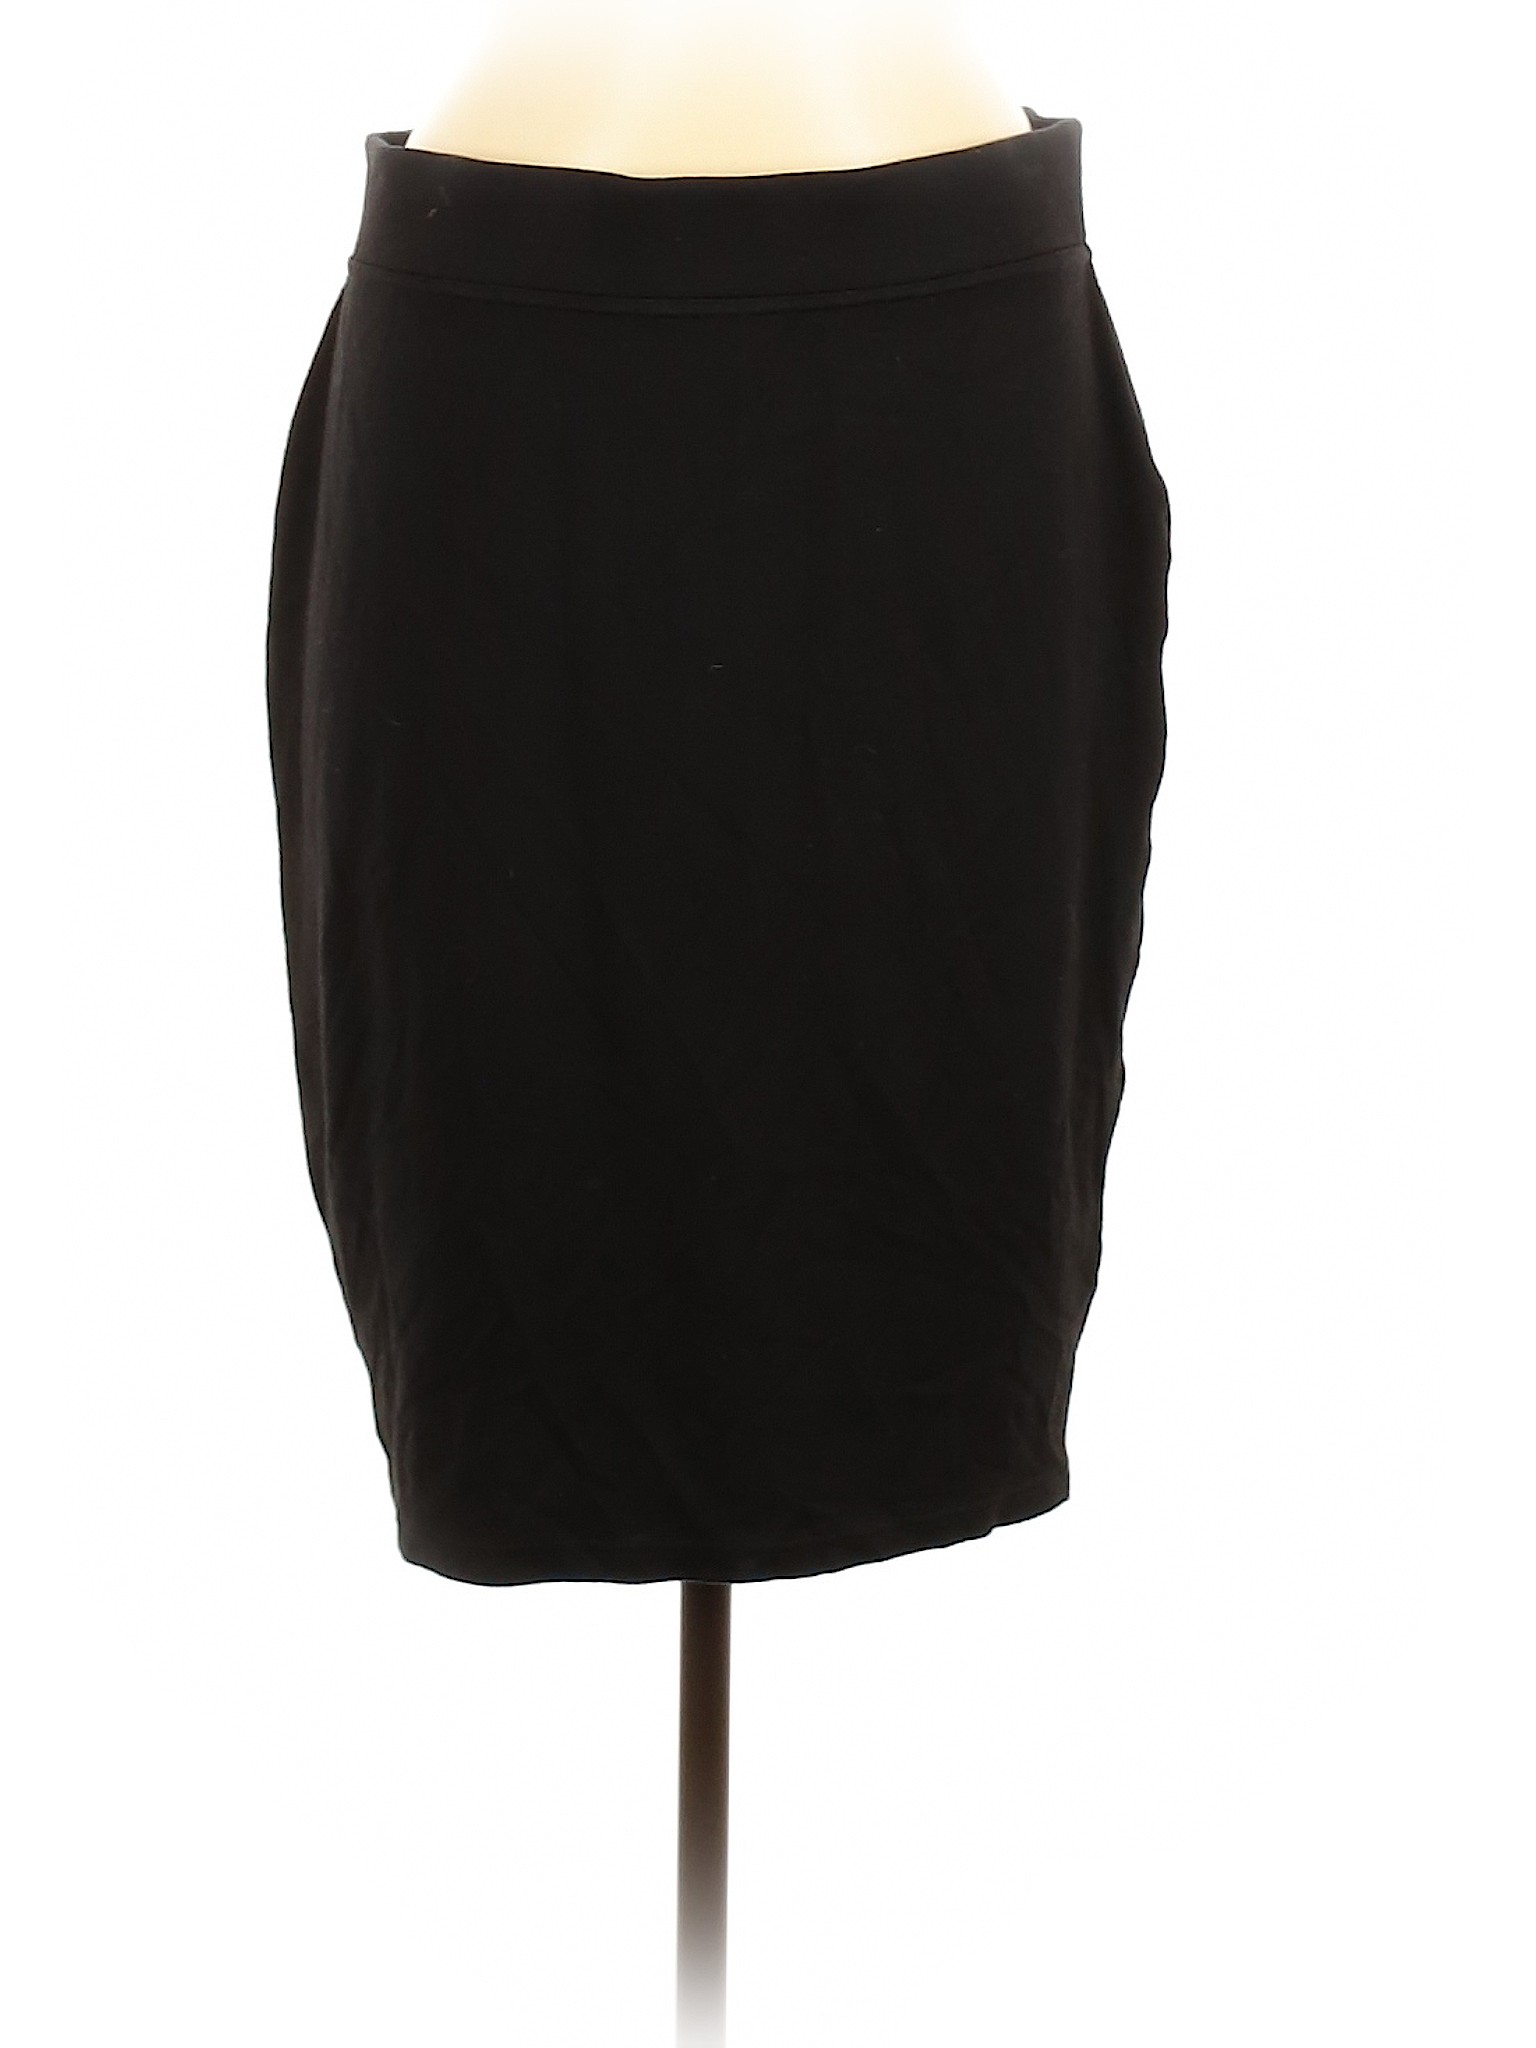 Marc New York Women Black Casual Skirt M | eBay